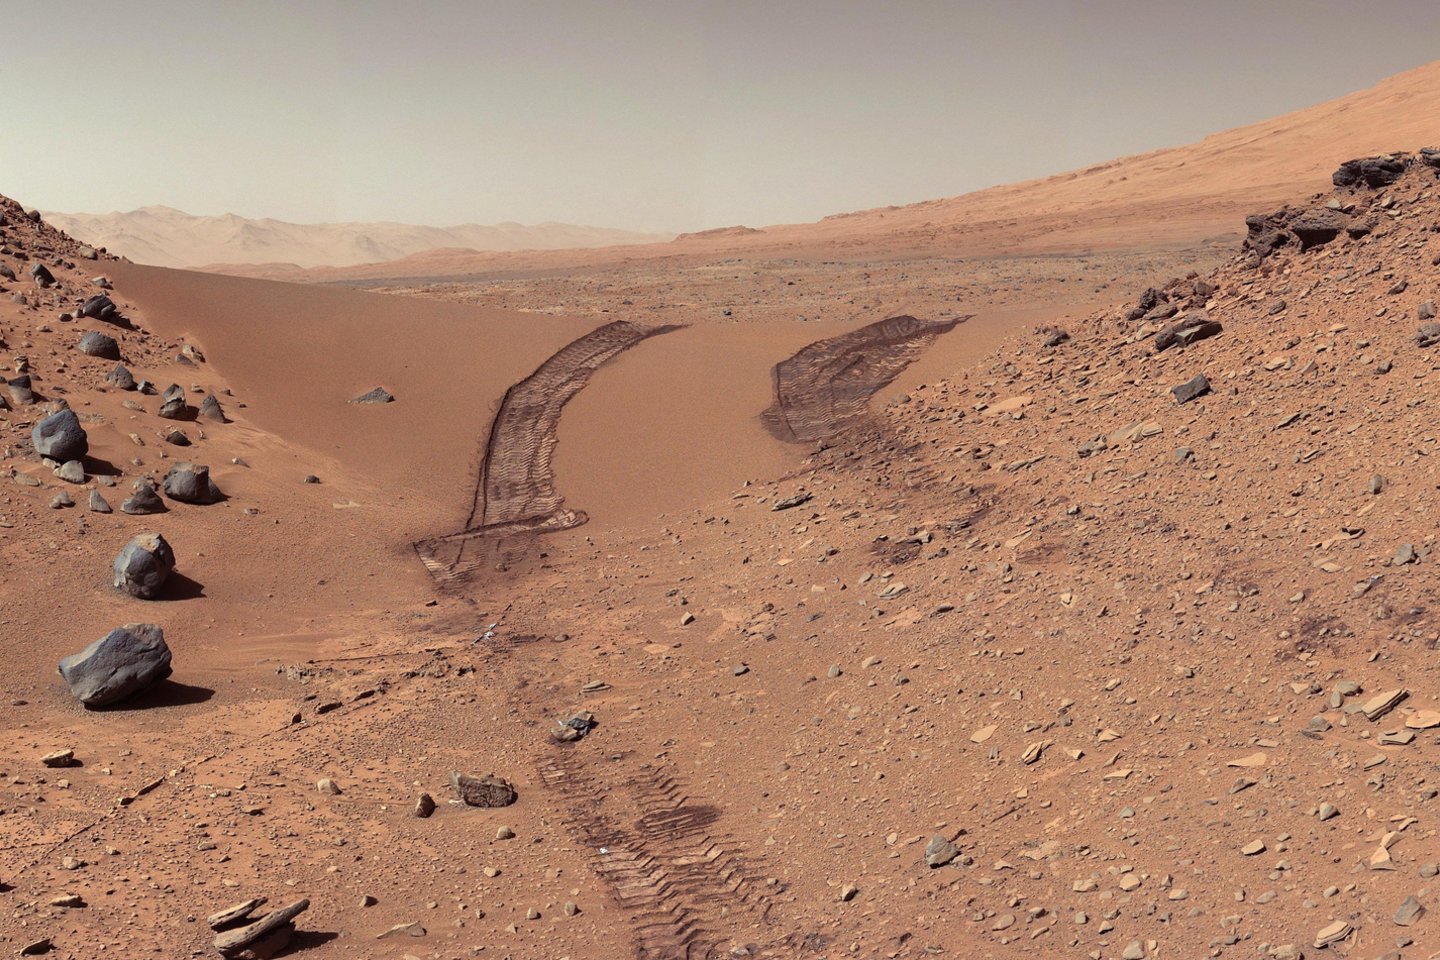  Marsas šiuo metu yra sausesnis už Žemės dykumas. Bet taip buvo ne visada: prieš keturis milijardus metų ten tekėjo upės, tyvuliavo ežerai, plytėjo jūros.<br> ESA nuotr.